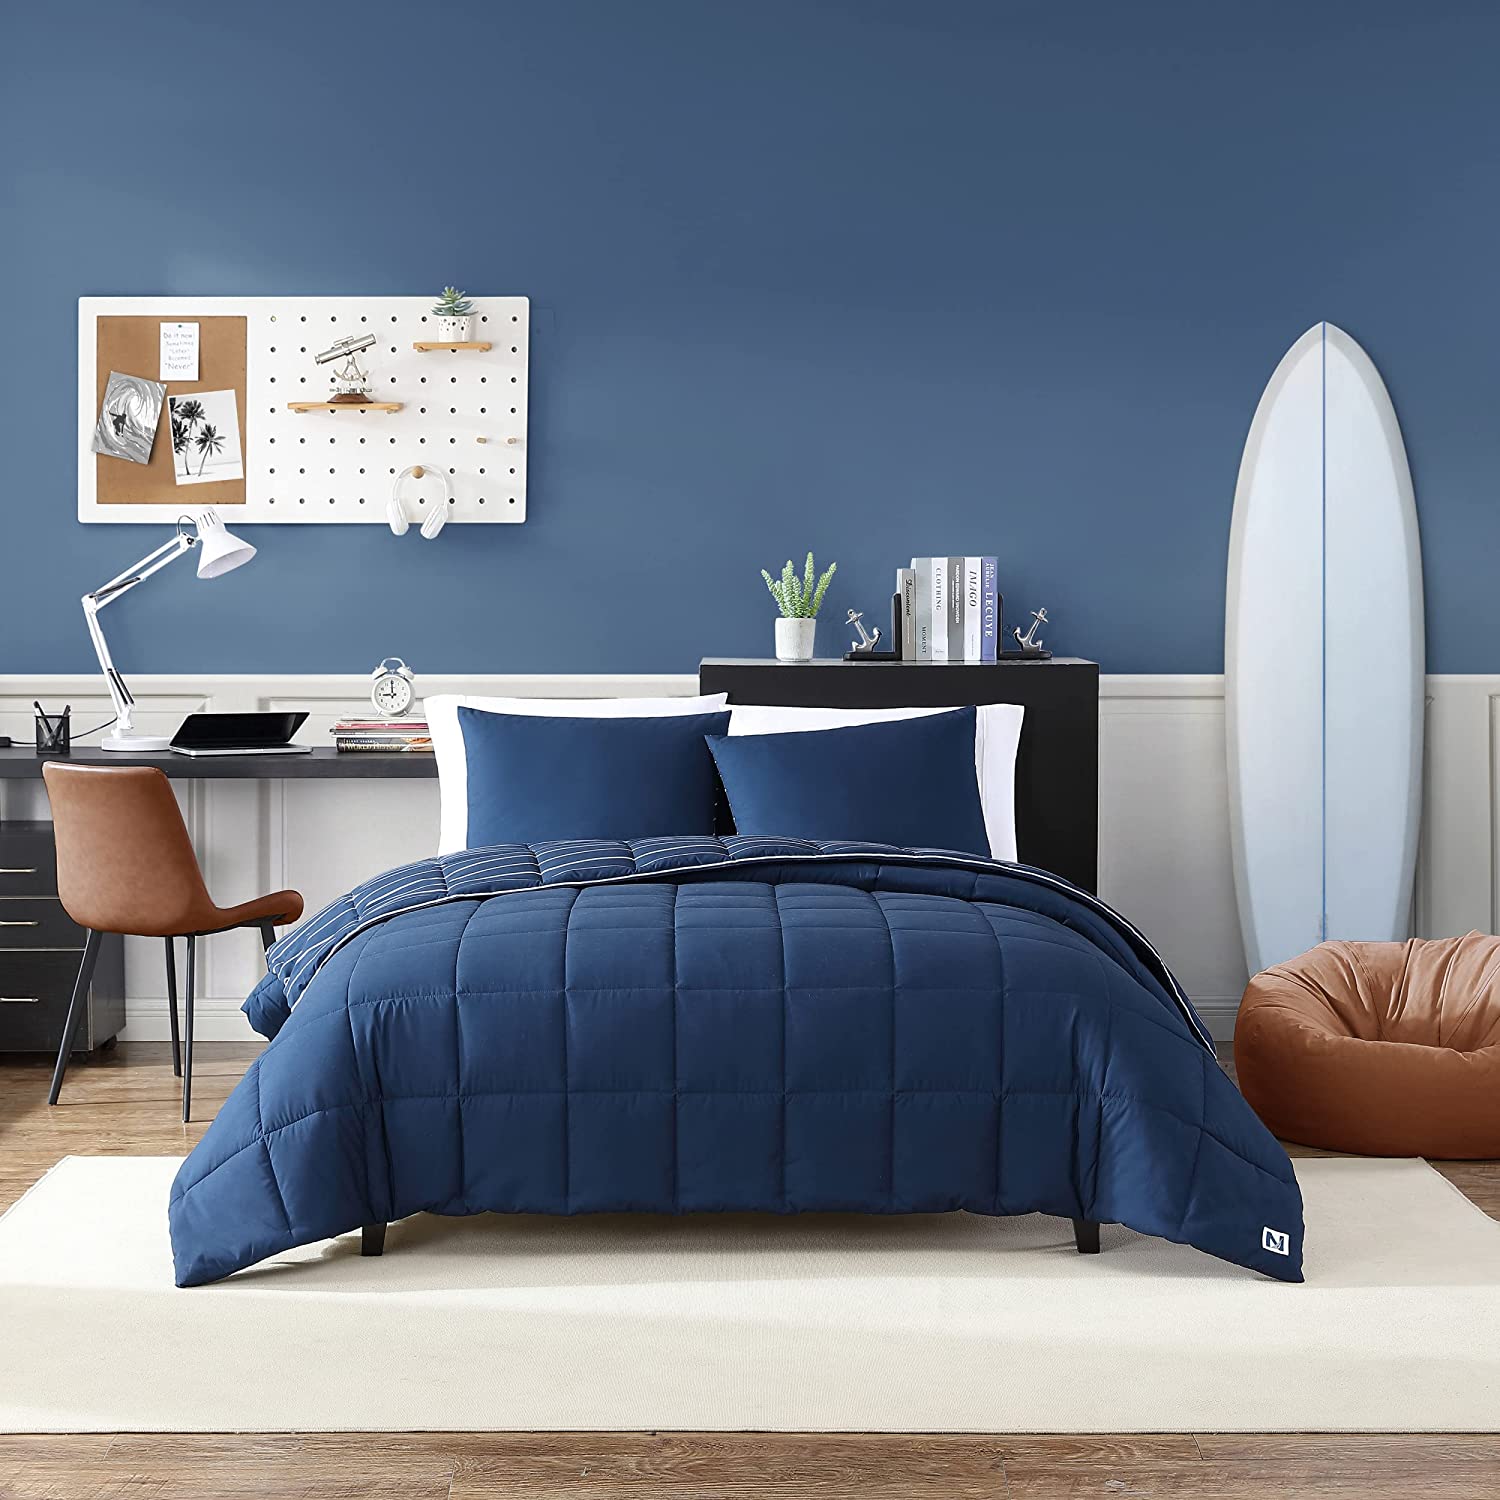 Nautica- Queen Comforter Set, Cotton Reversible Bedding Set, All